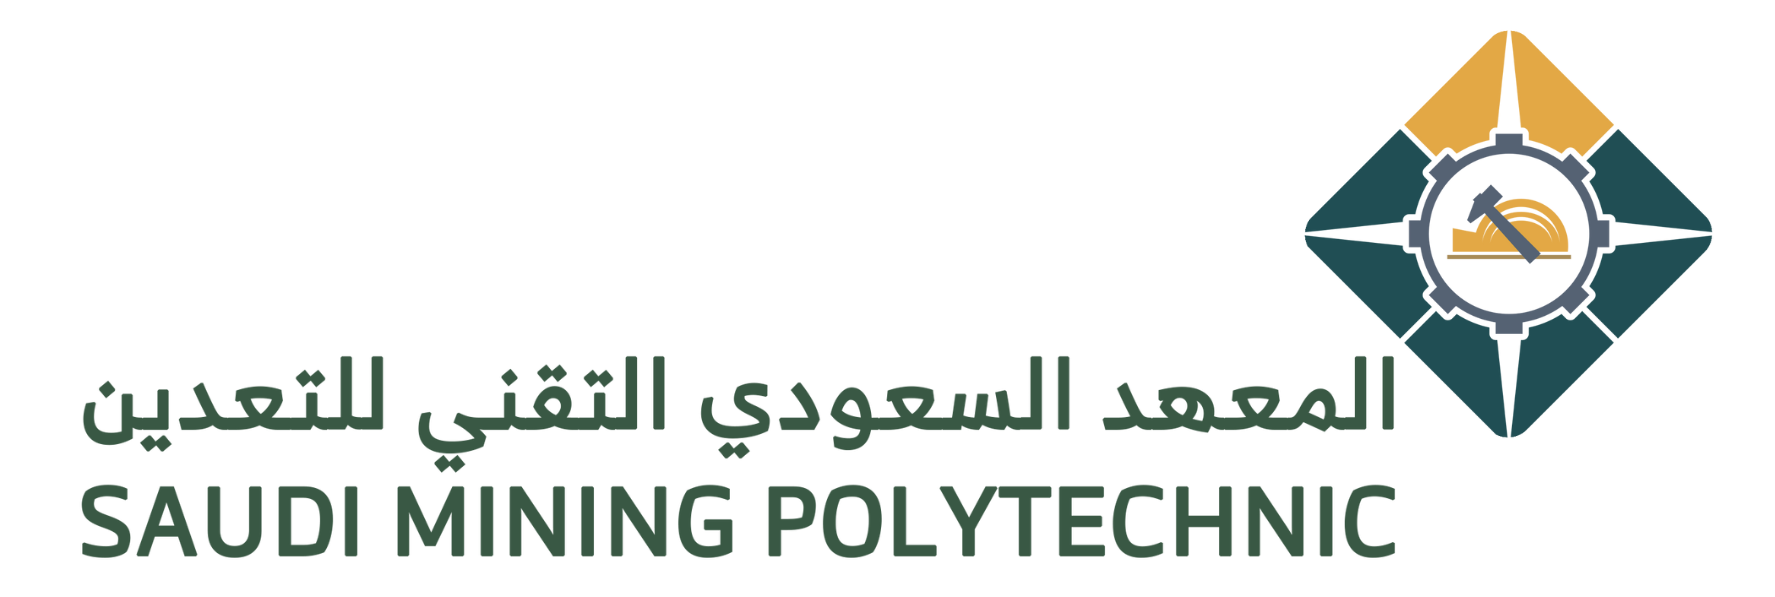 Saudi Mining Polytechnic